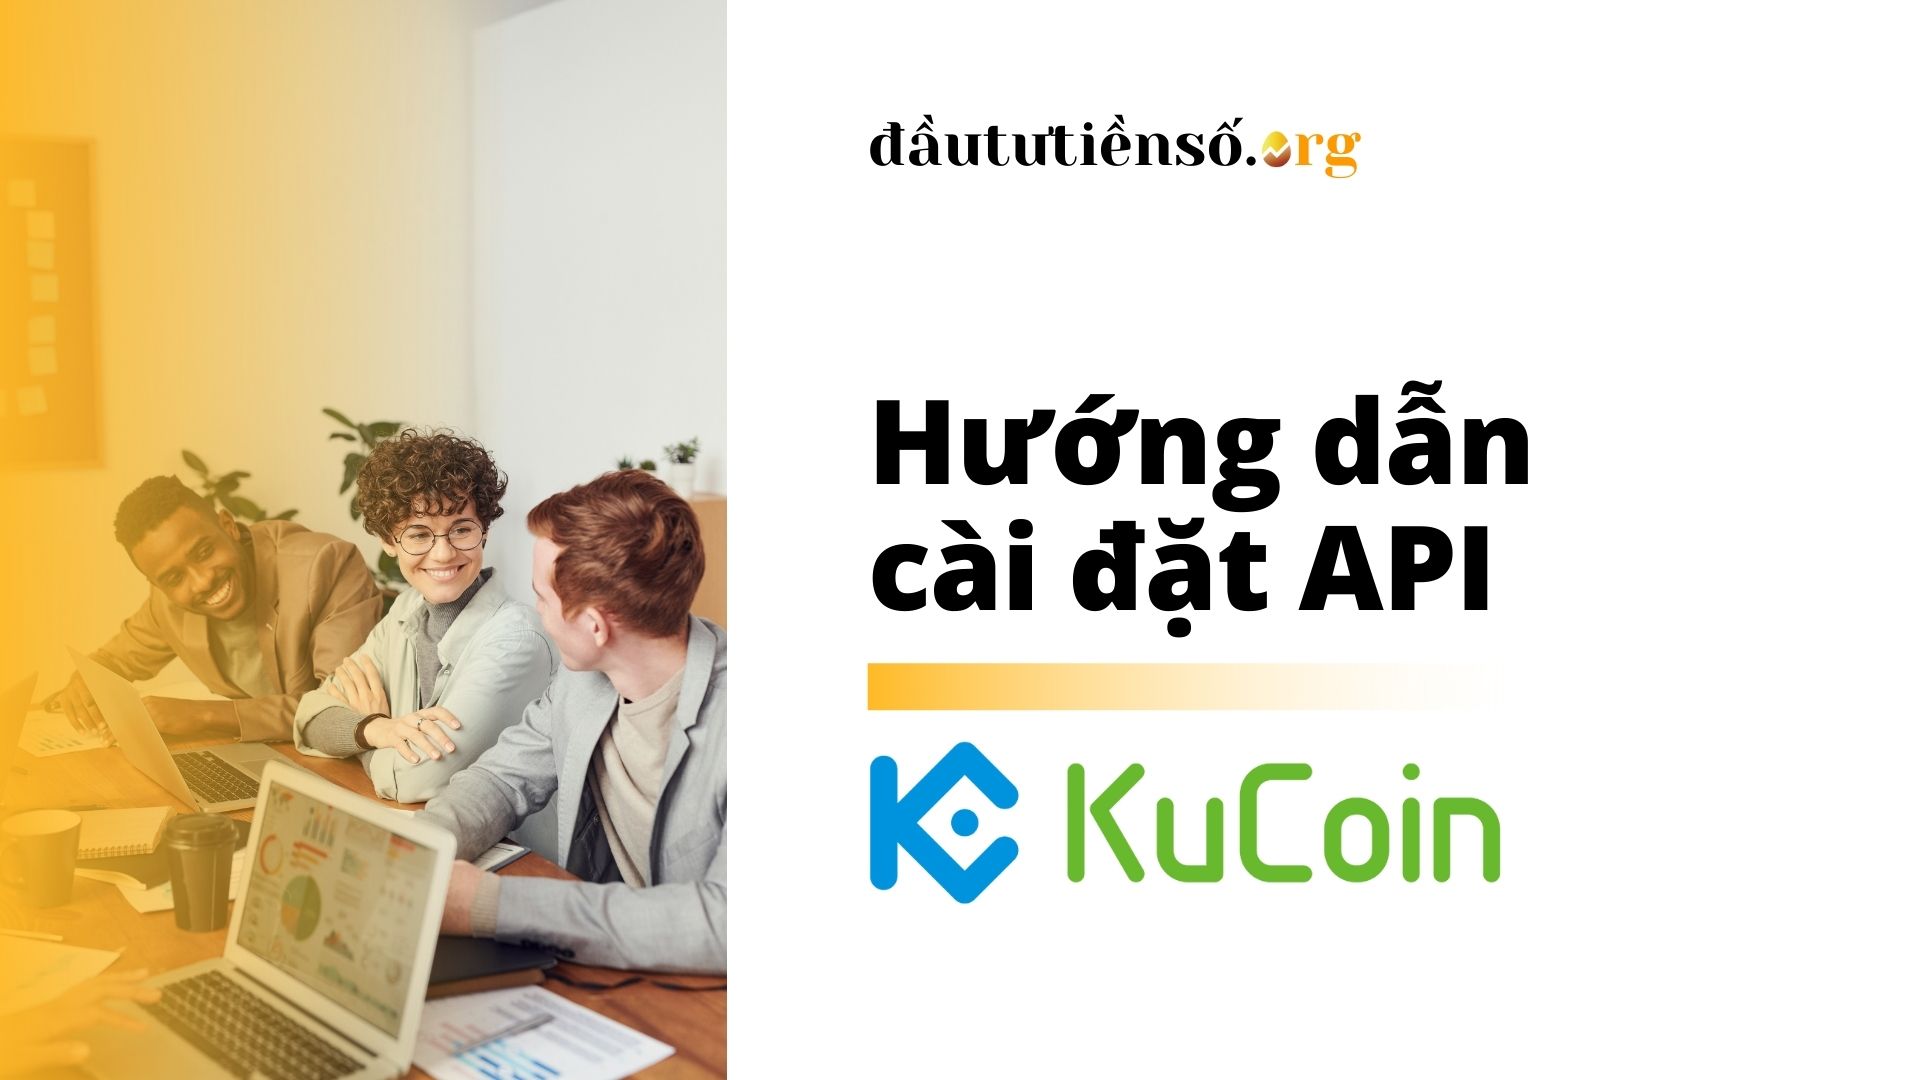 Hên Network | Hướng dẫn cài đặt API sàn Kucoin